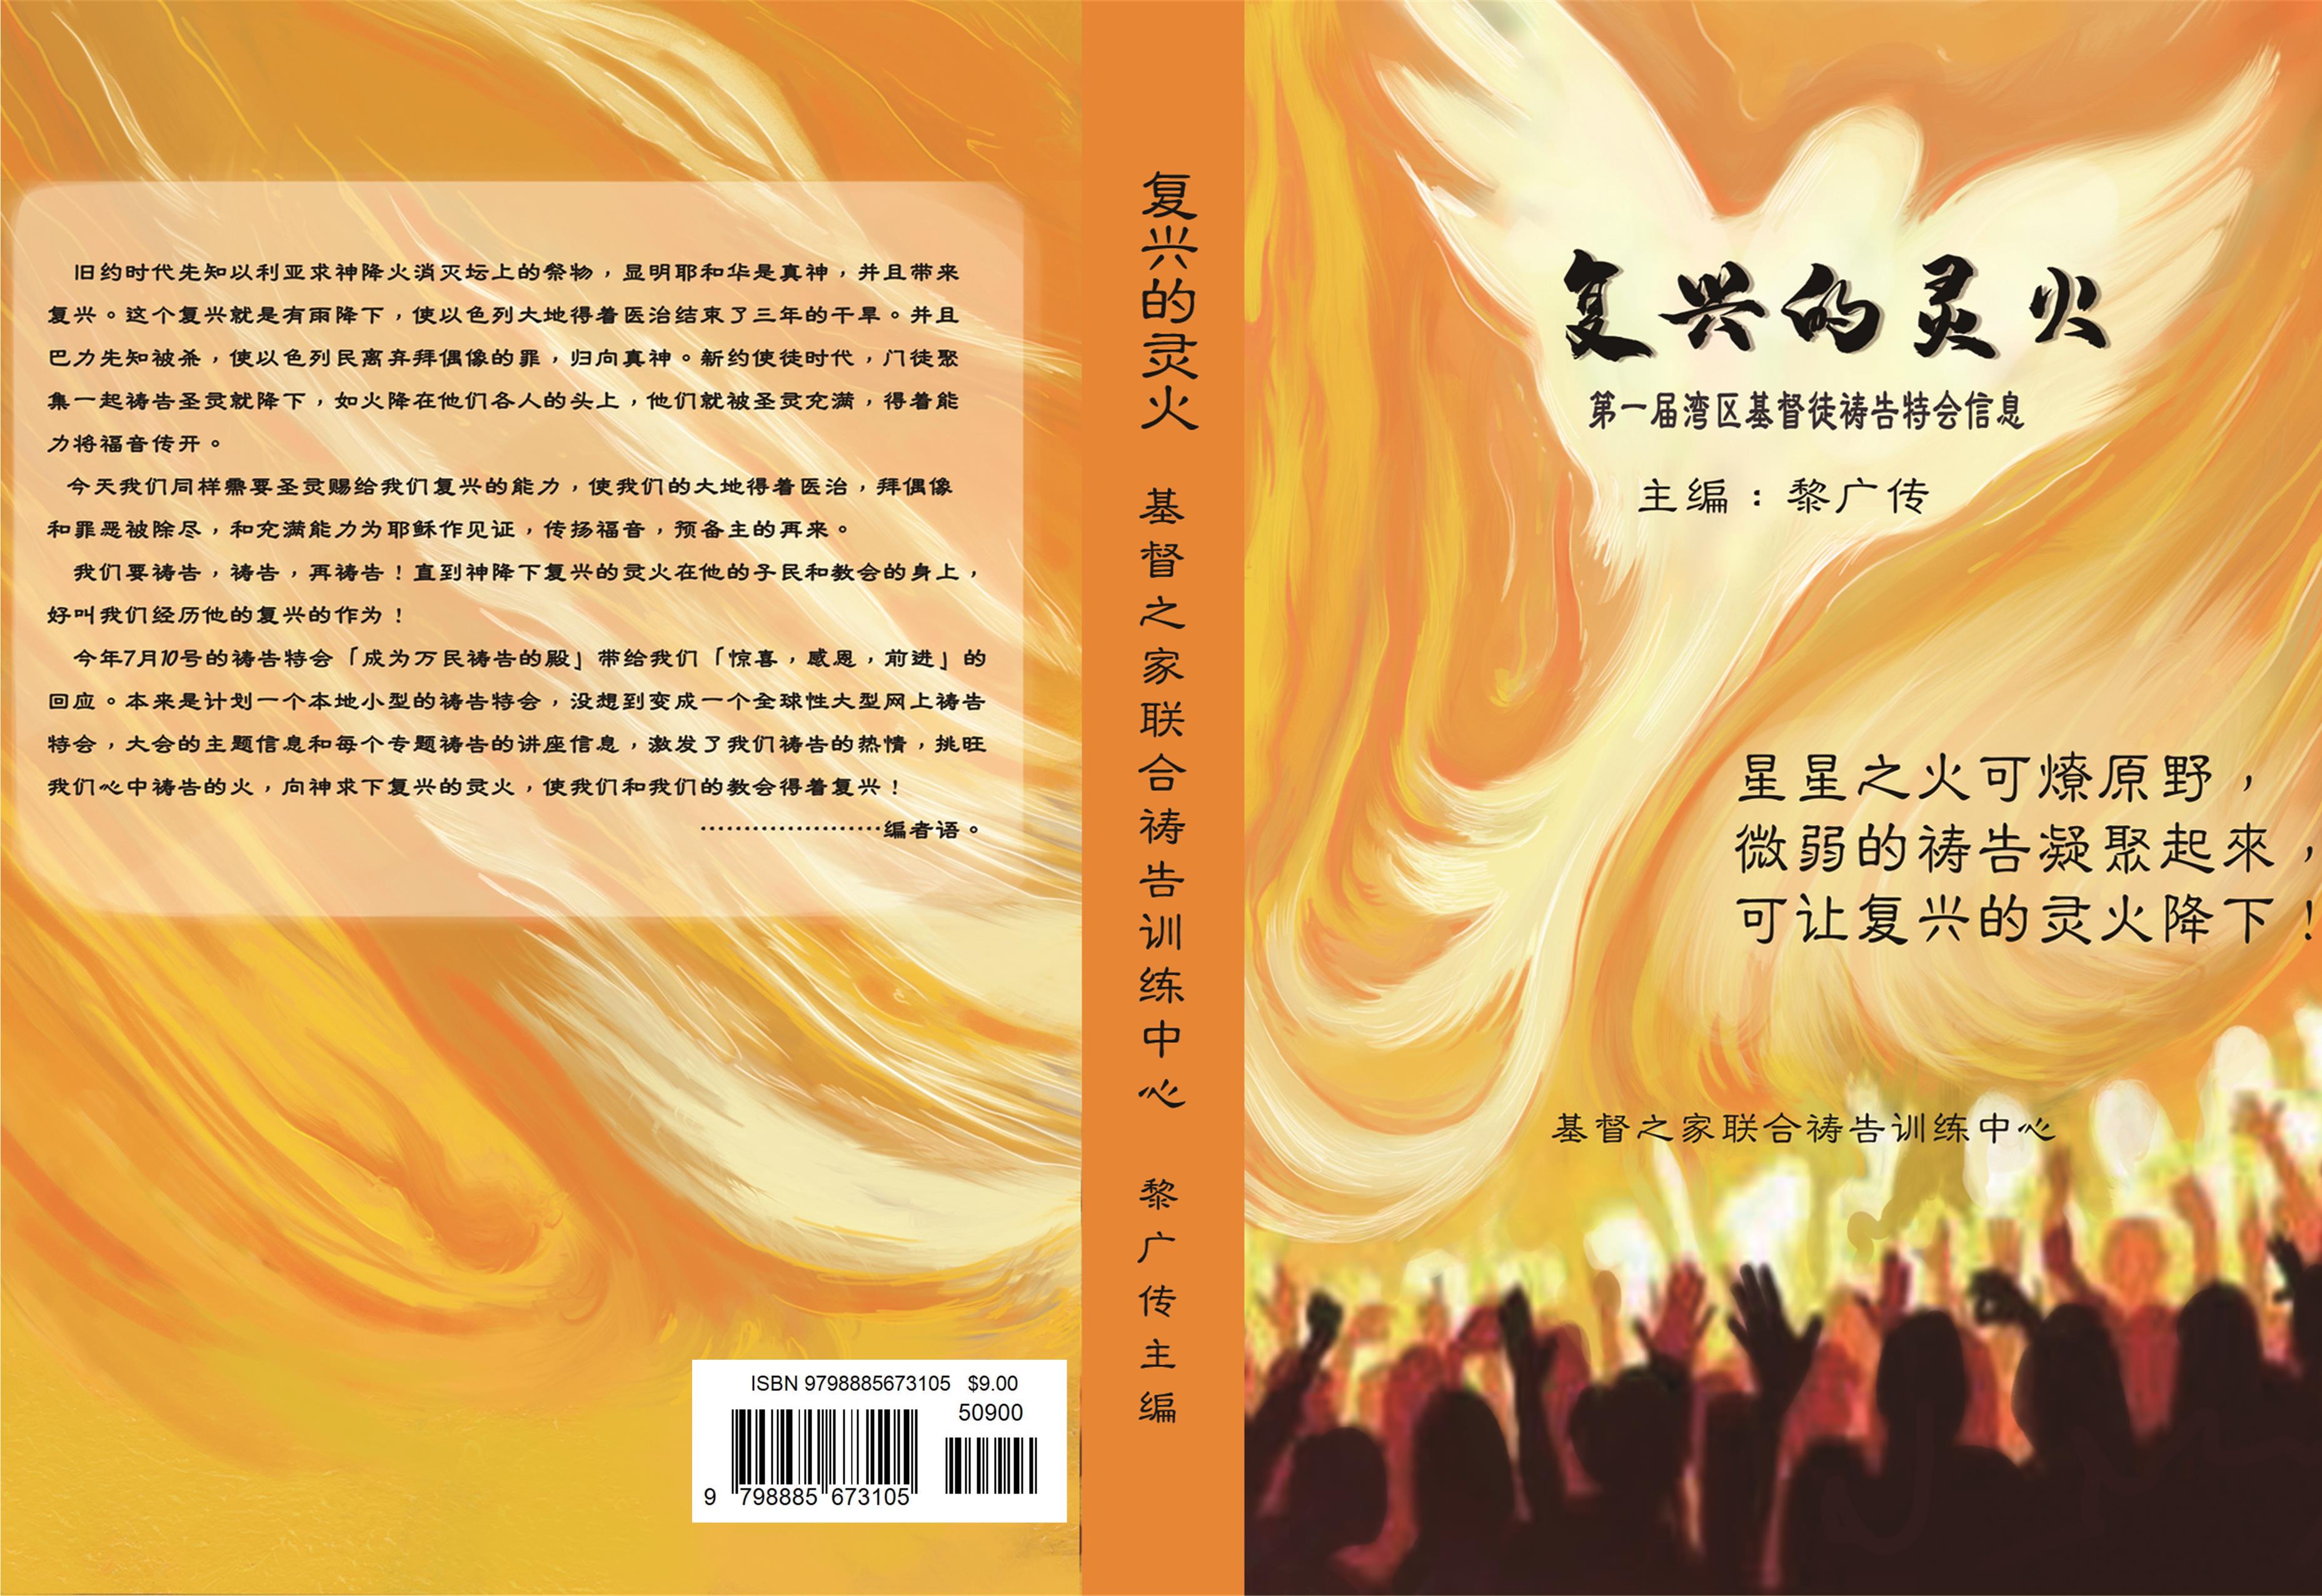 复兴的灵火 Fire of spiritual revival (简体版) cover image